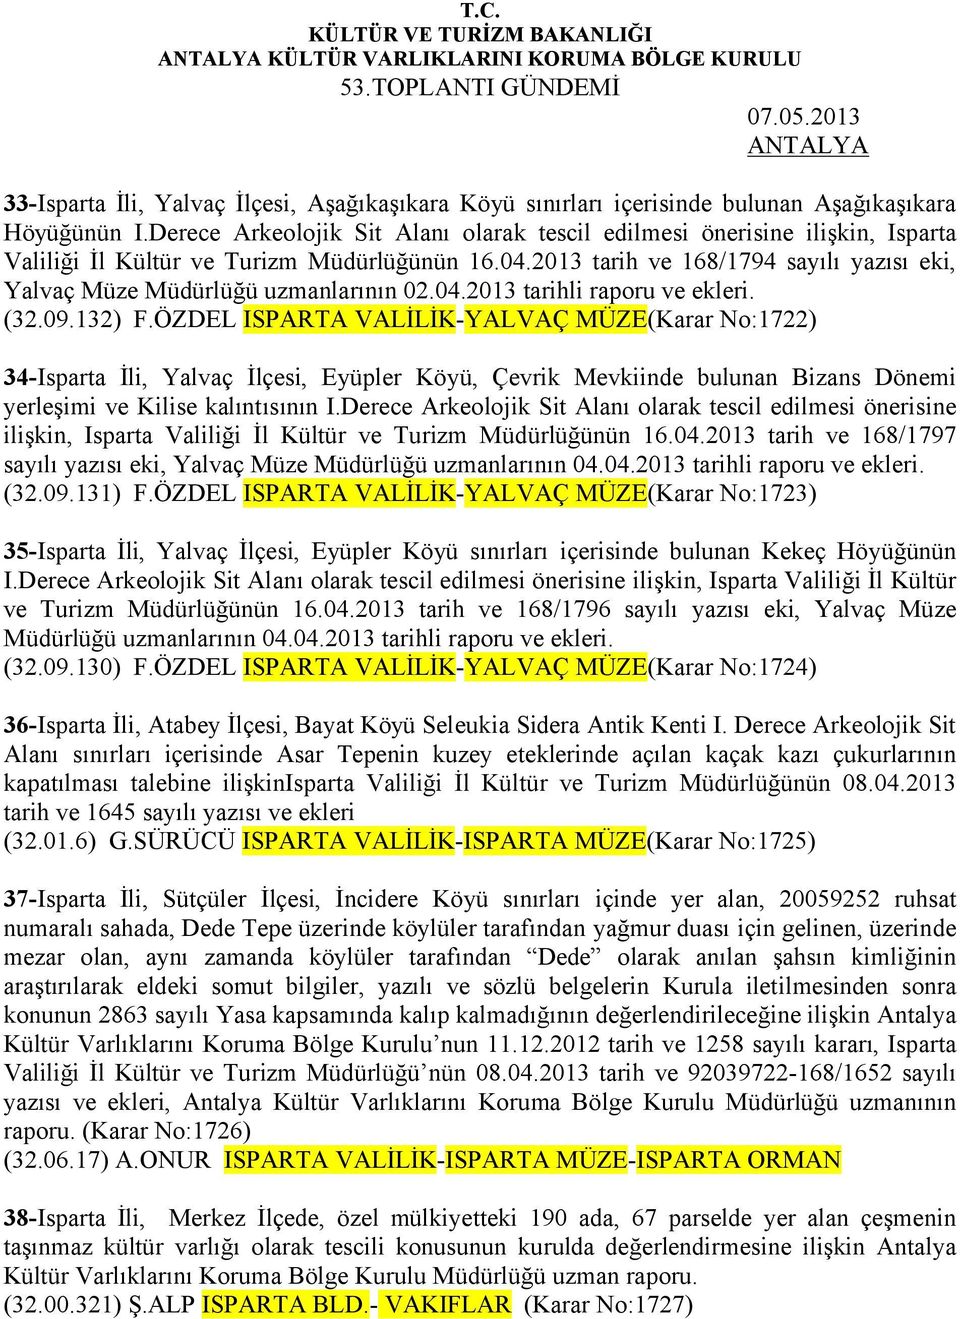 2013 tarih ve 168/1794 sayılı yazısı eki, Yalvaç Müze Müdürlüğü uzmanlarının 02.04.2013 tarihli raporu ve ekleri. (32.09.132) F.